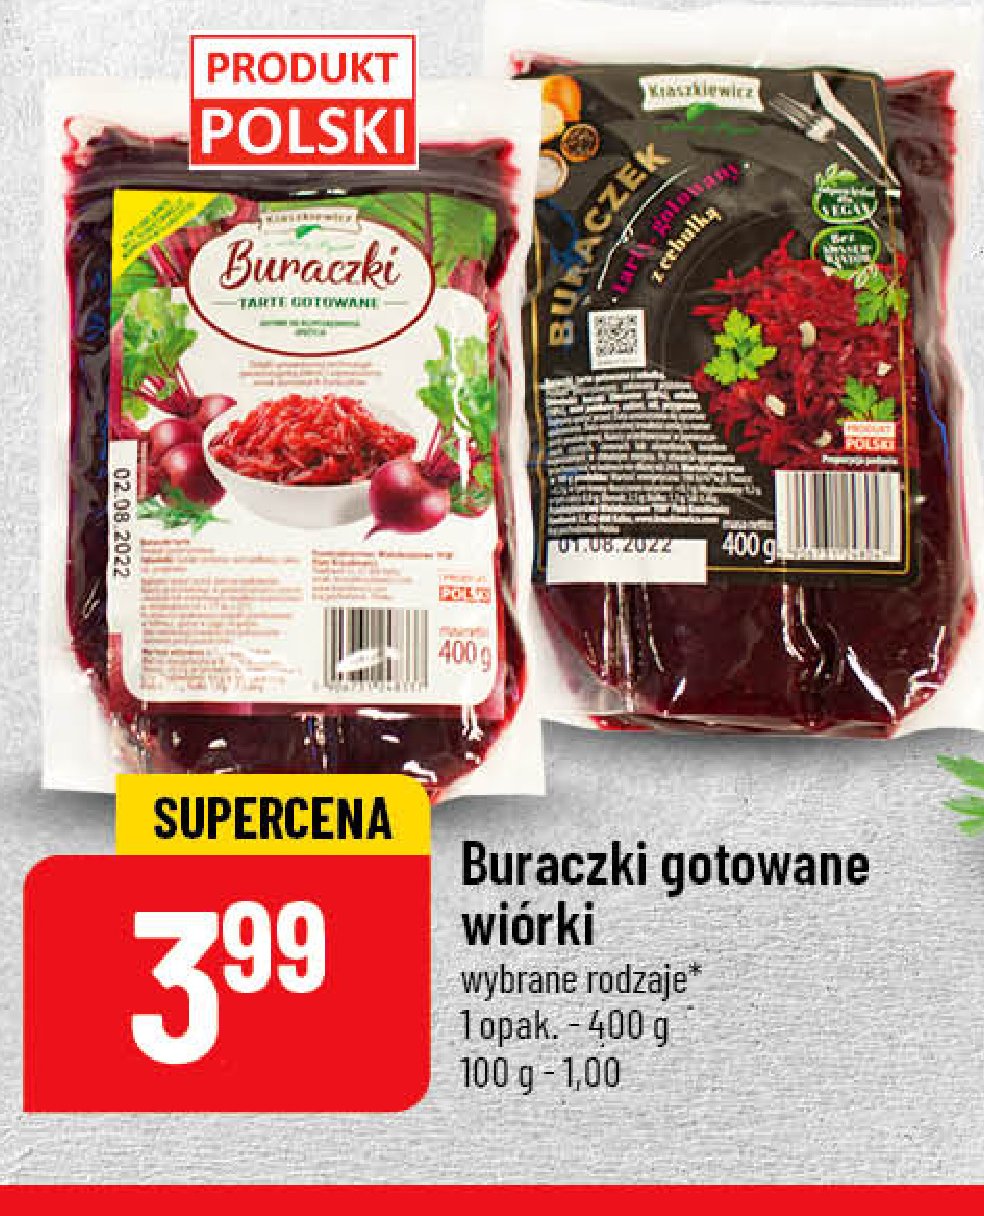 Buraczki gotowane z cebulką - wiórki Kraszkiewicz promocja